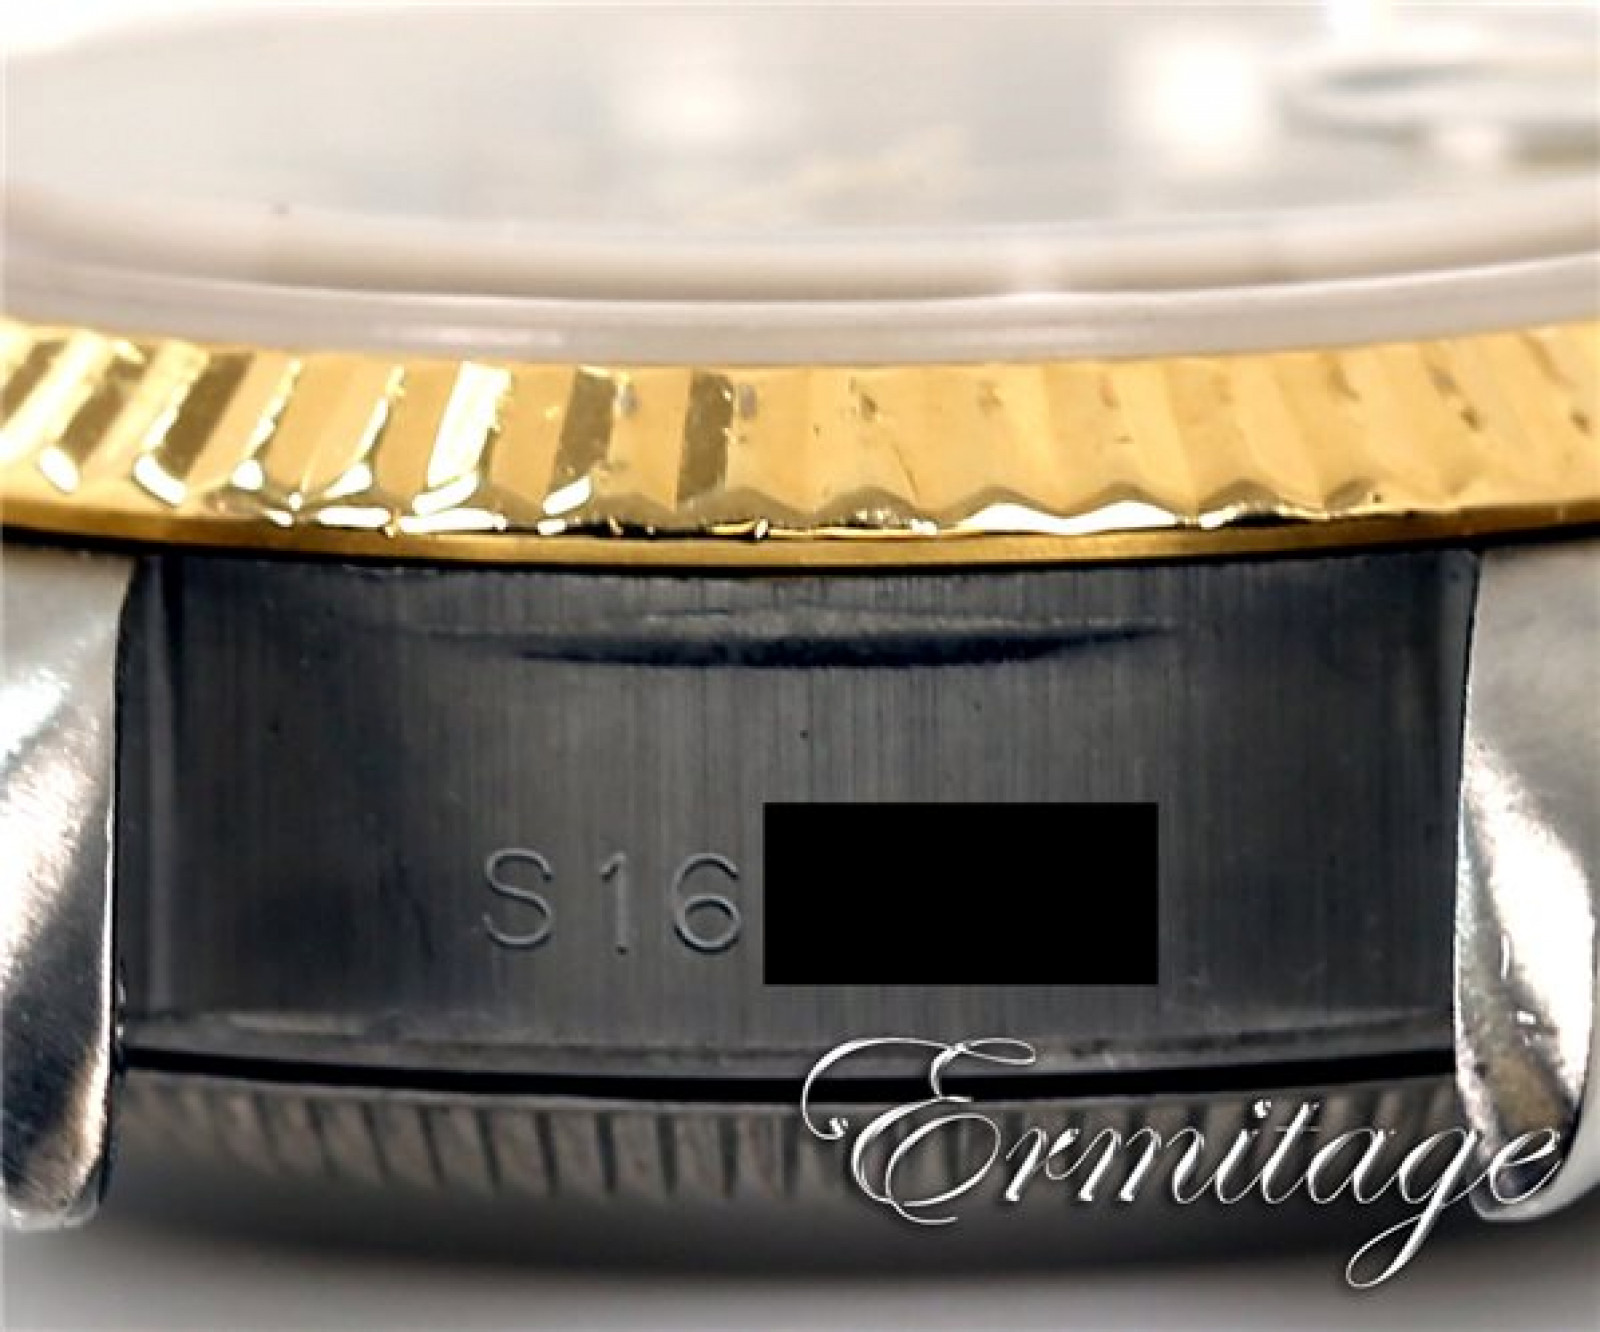 Ladies Rolex Datejust 69173 Gold & Steel